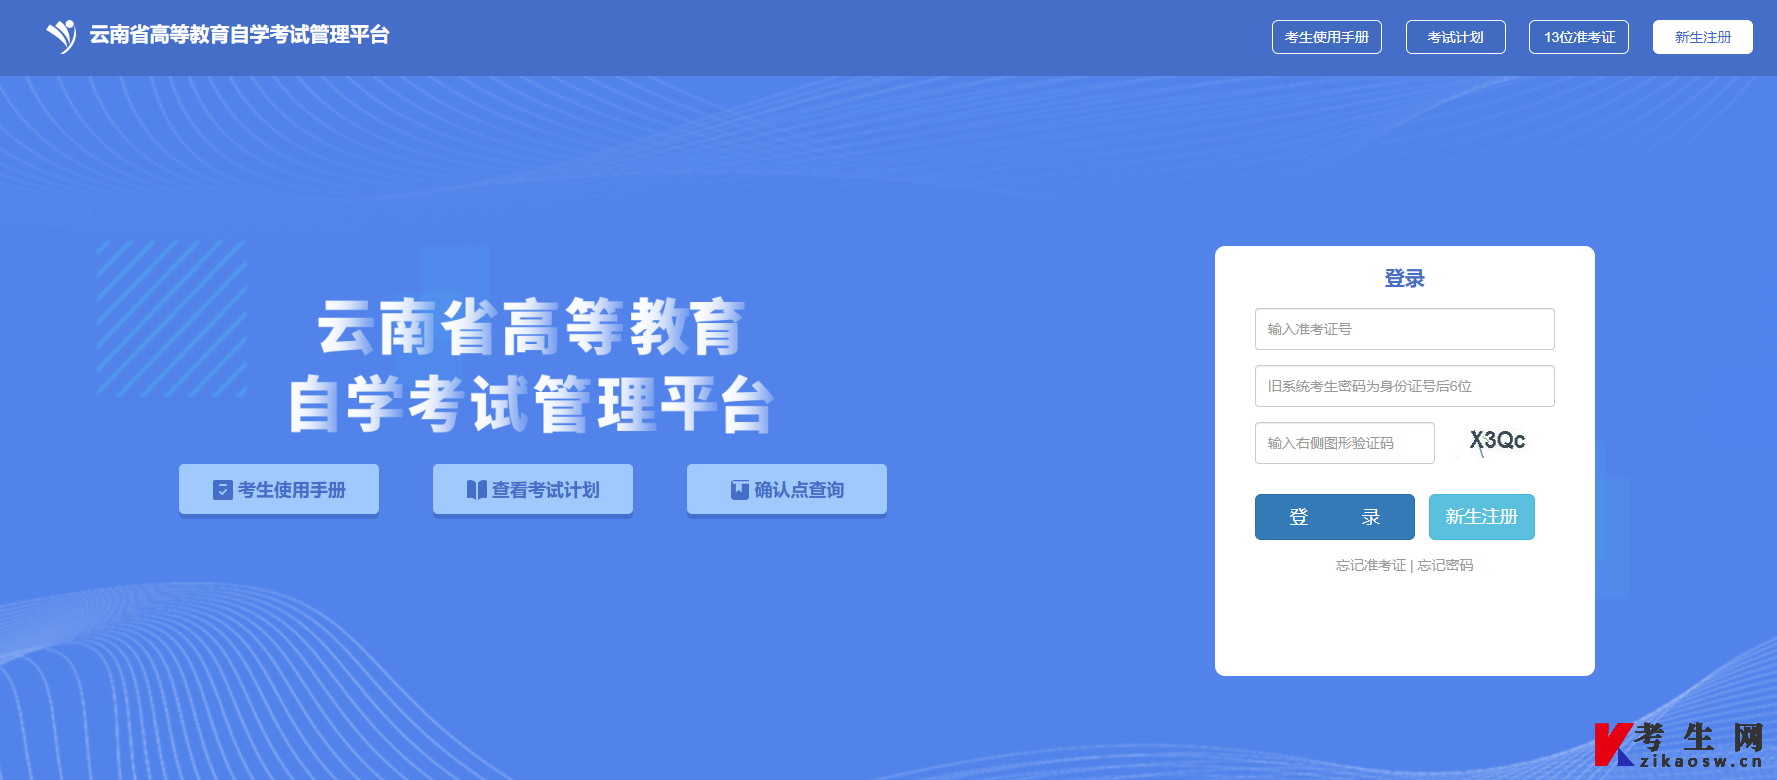 云南省高等教育自学考试管理平台